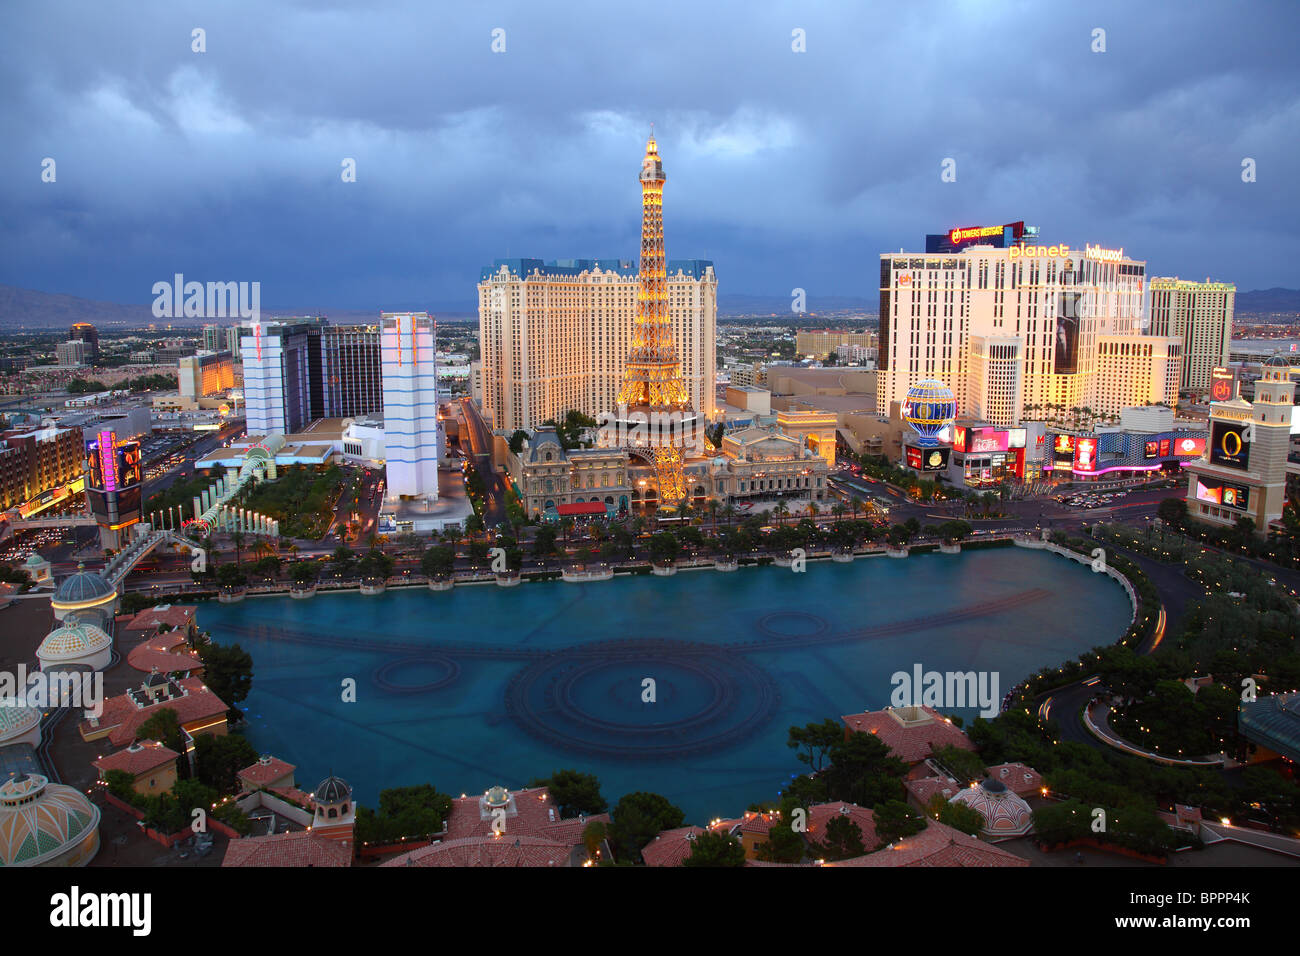 Blick auf die Bellagio Fountan und Hotel in Paris in der Abenddämmerung, Las Vegas Stockfoto